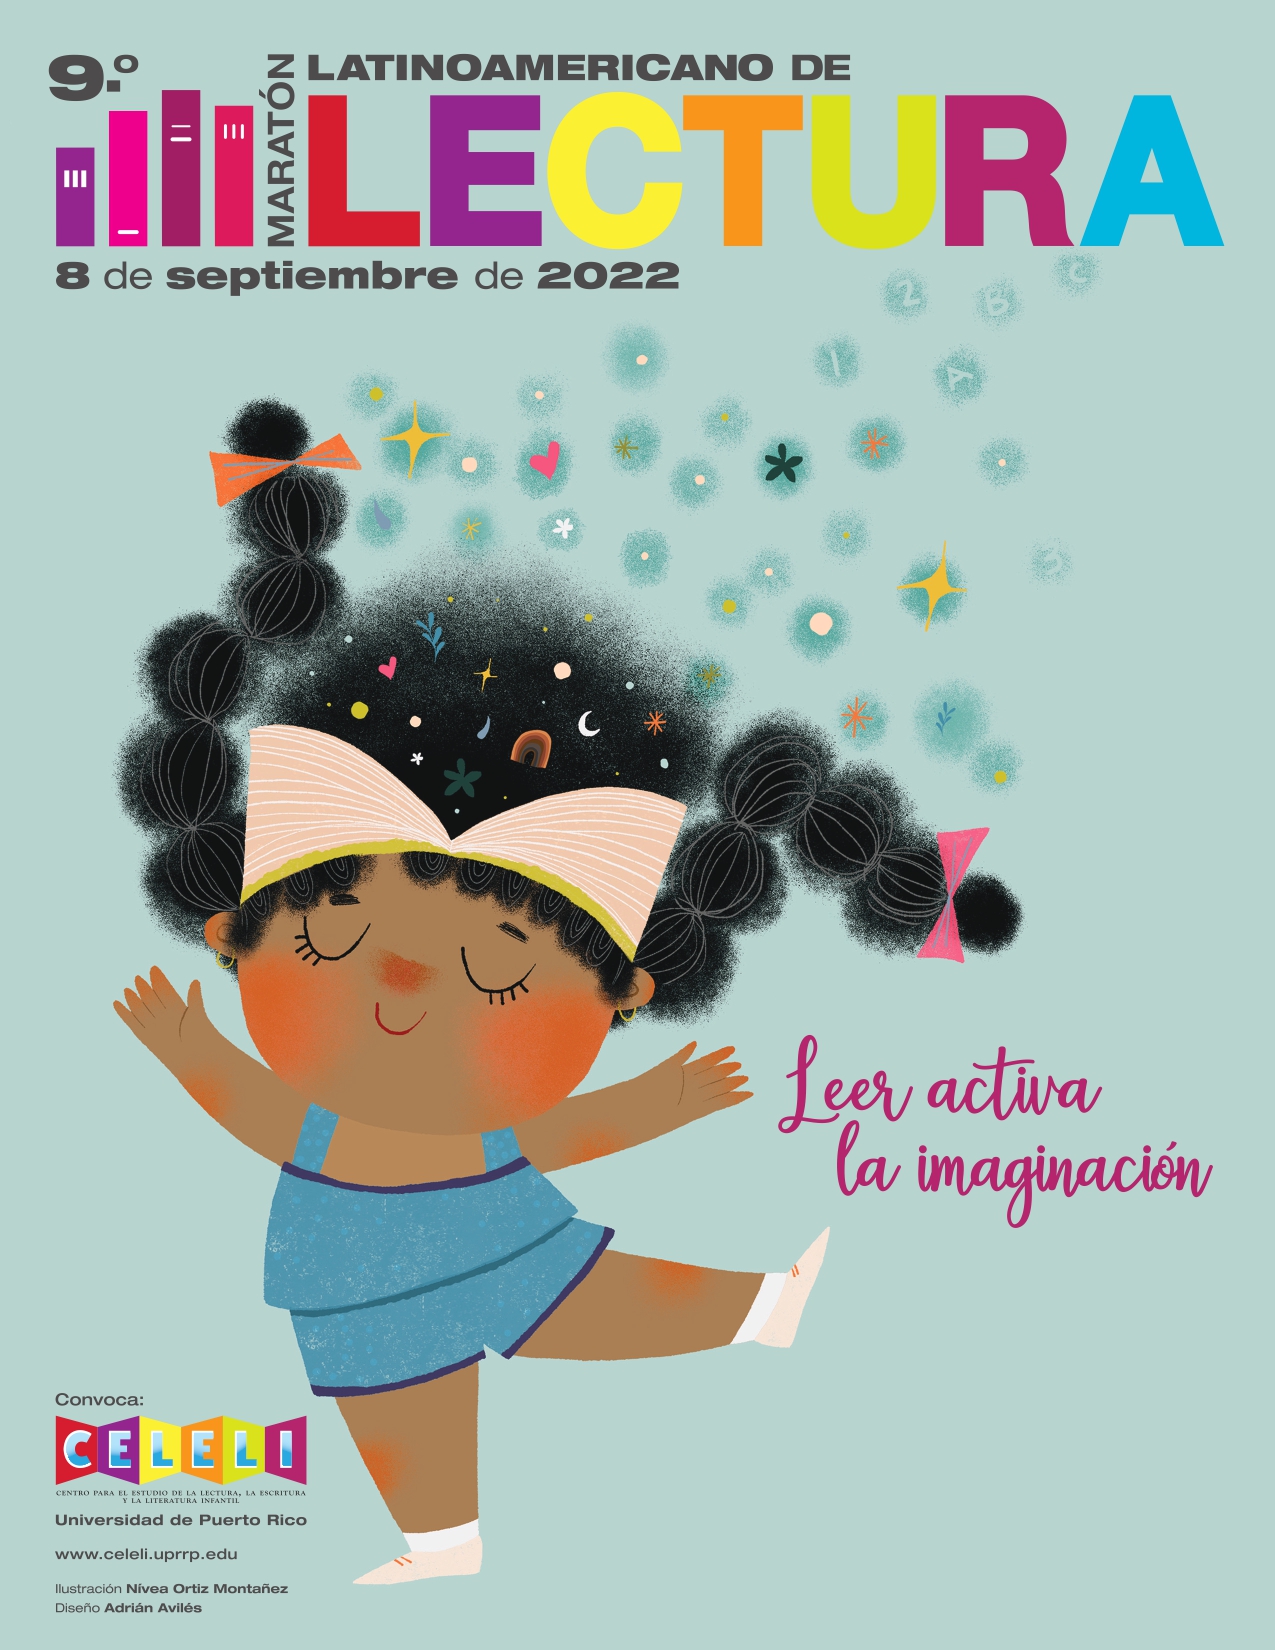 Active su imaginación y participe en el 9° Maratón Latinoamericano de Lectura